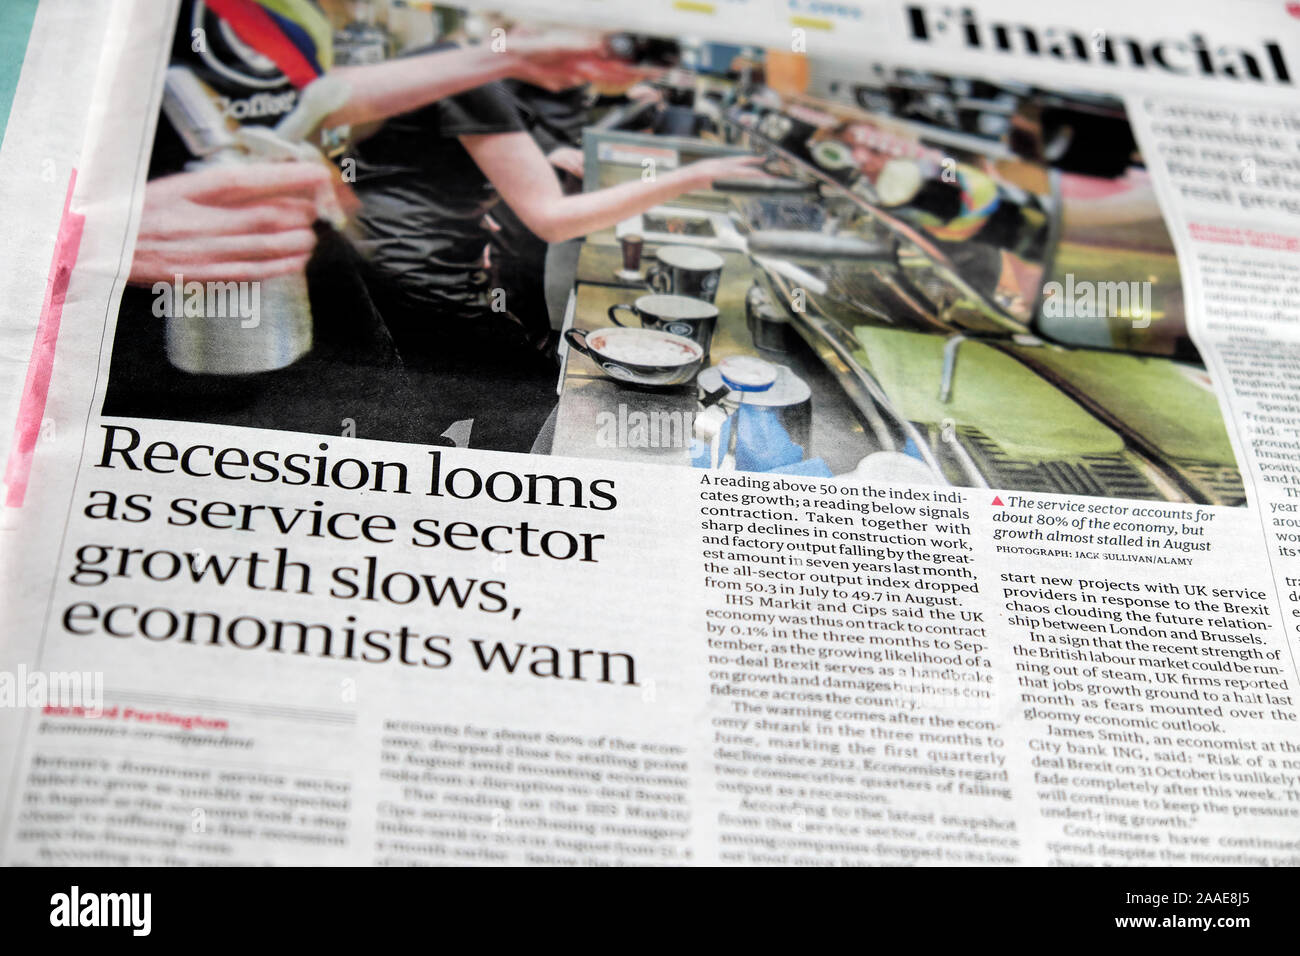 "Telai di recessione come settore di servizio la crescita rallenta, economisti warn' titolo di giornale in custode sezione finanziaria all'interno di Pages London REGNO UNITO Foto Stock